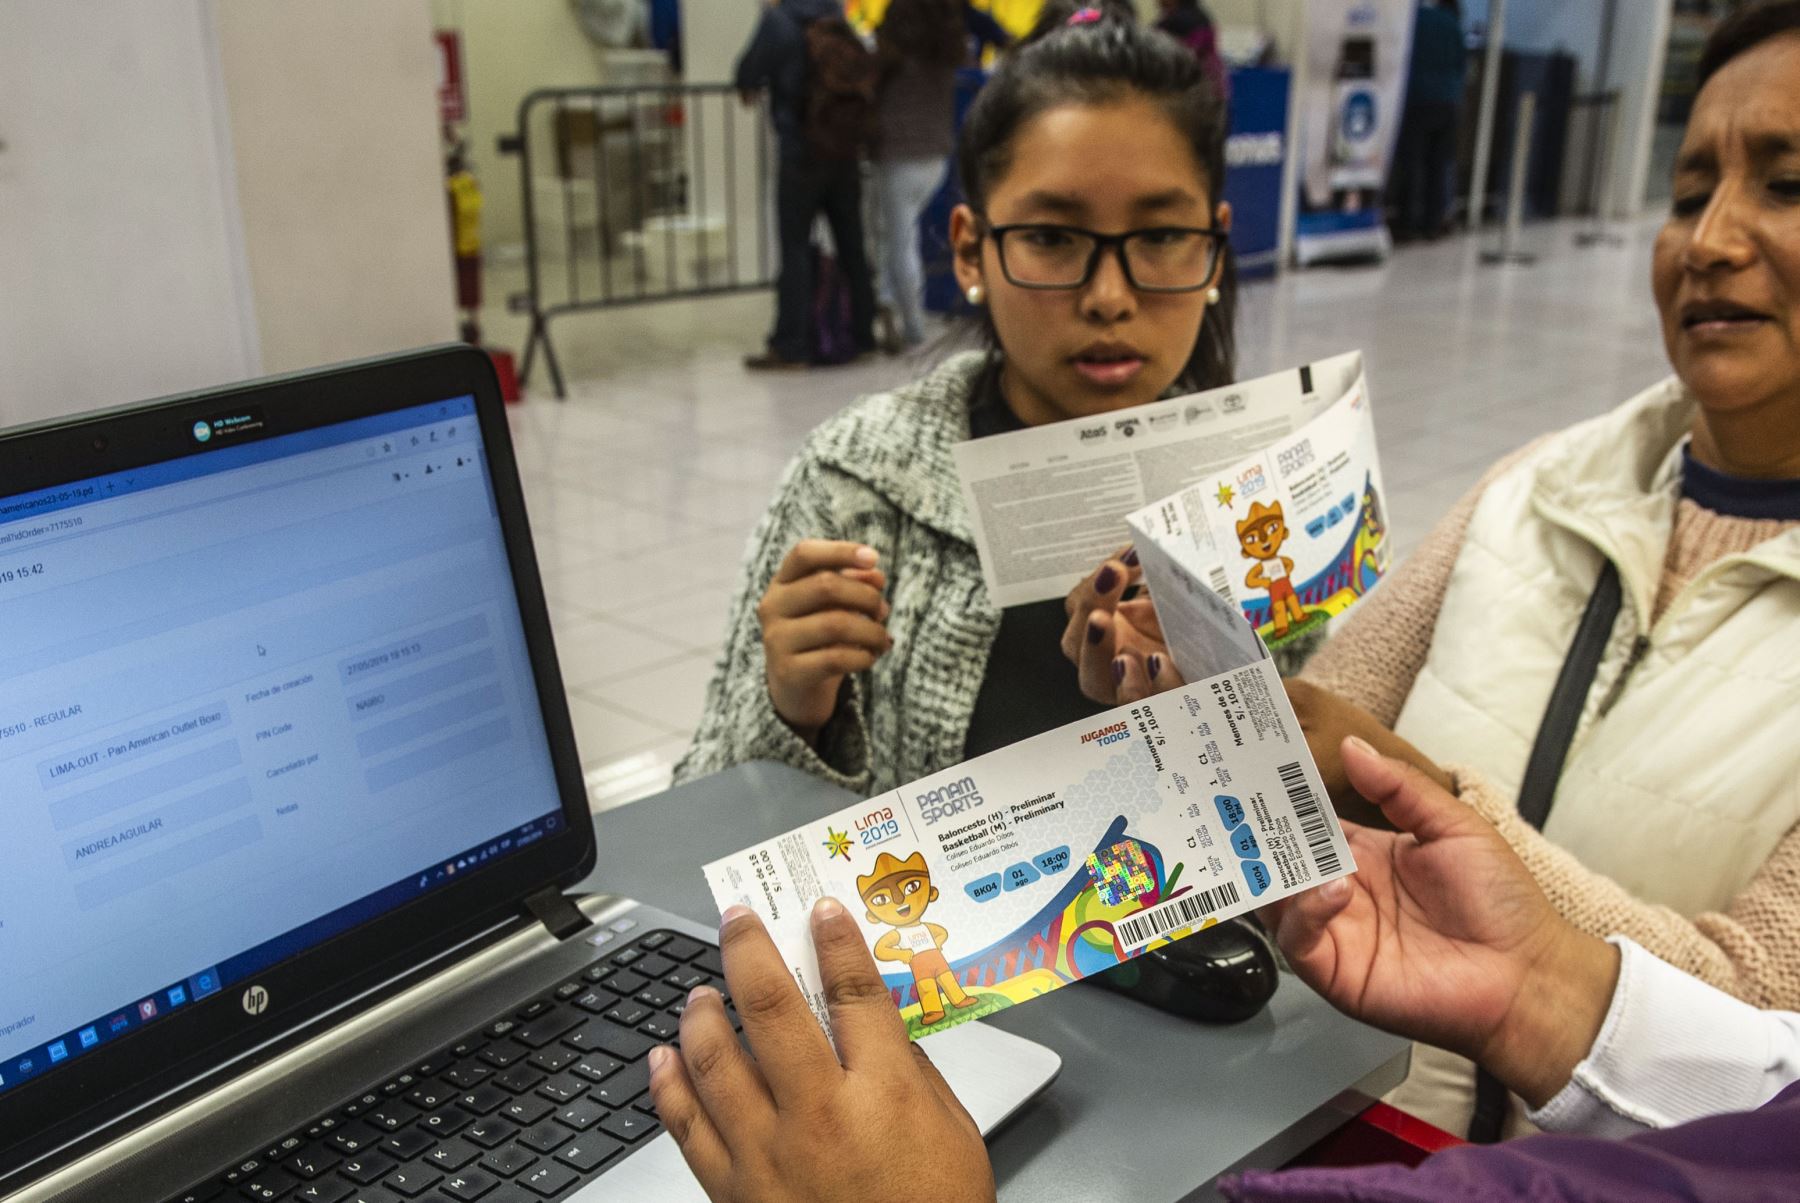 Público compra boletos de los Juegos Panamericanos en Lima en 2019, durante el primer día se vendieron más de 25 mil boletos que batió el récord histórico en ventas de boletos para espectáculos deportivos en Perú. Foto: AFP